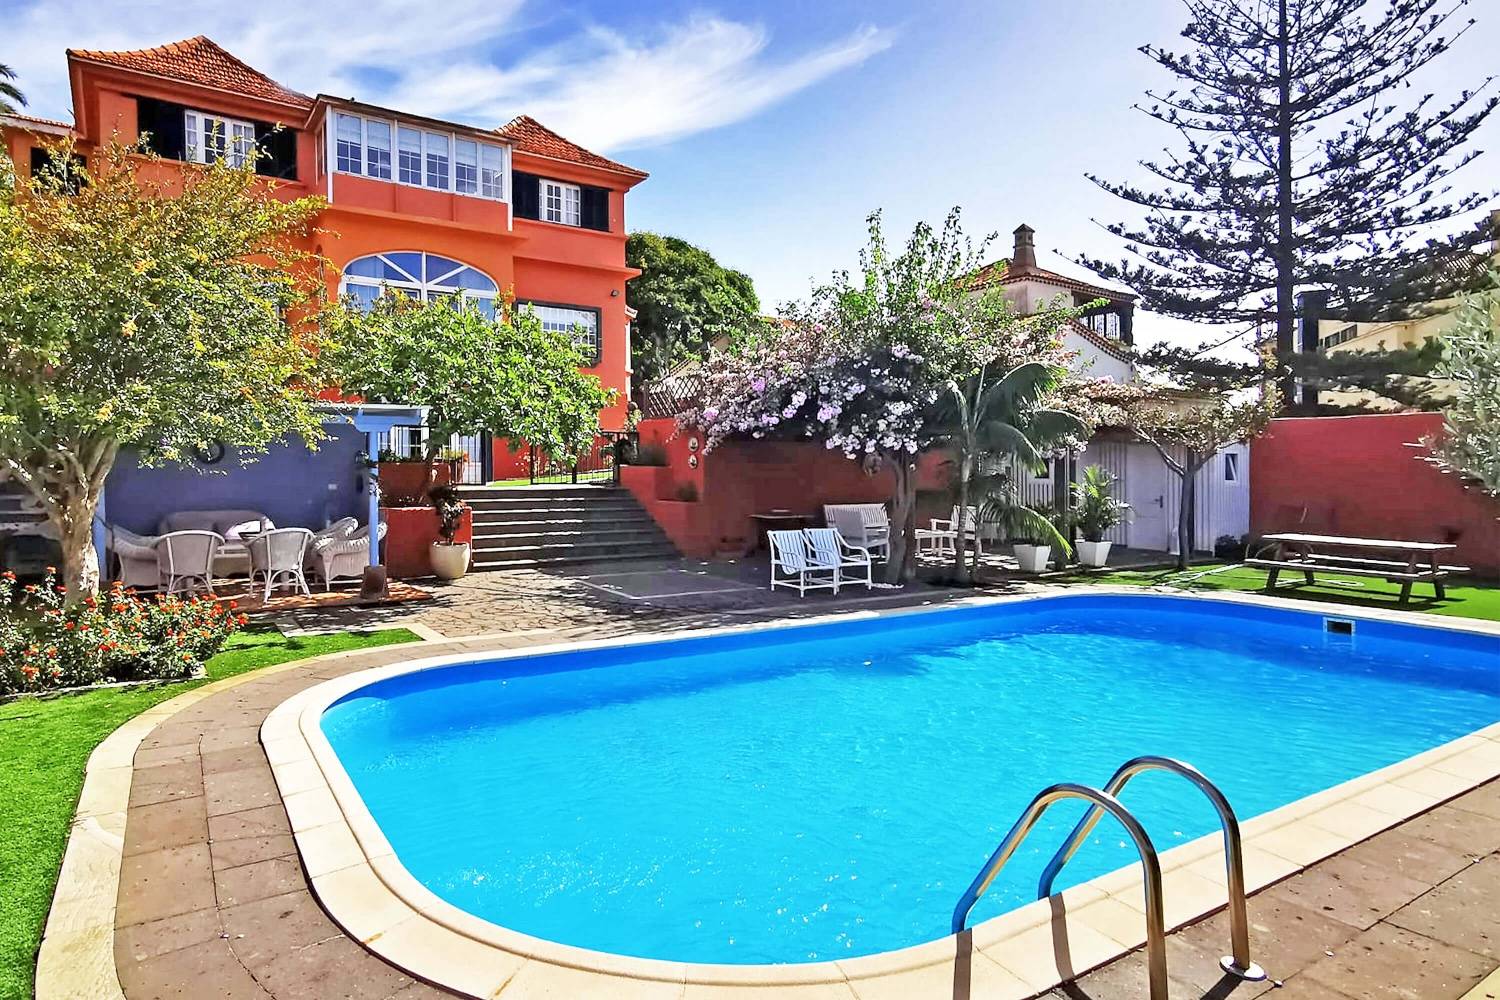 Splendide appartement indépendant situé à Santa Brígida, au nord de Gran Canaria, avec piscine privée, jardin et espace barbecue.